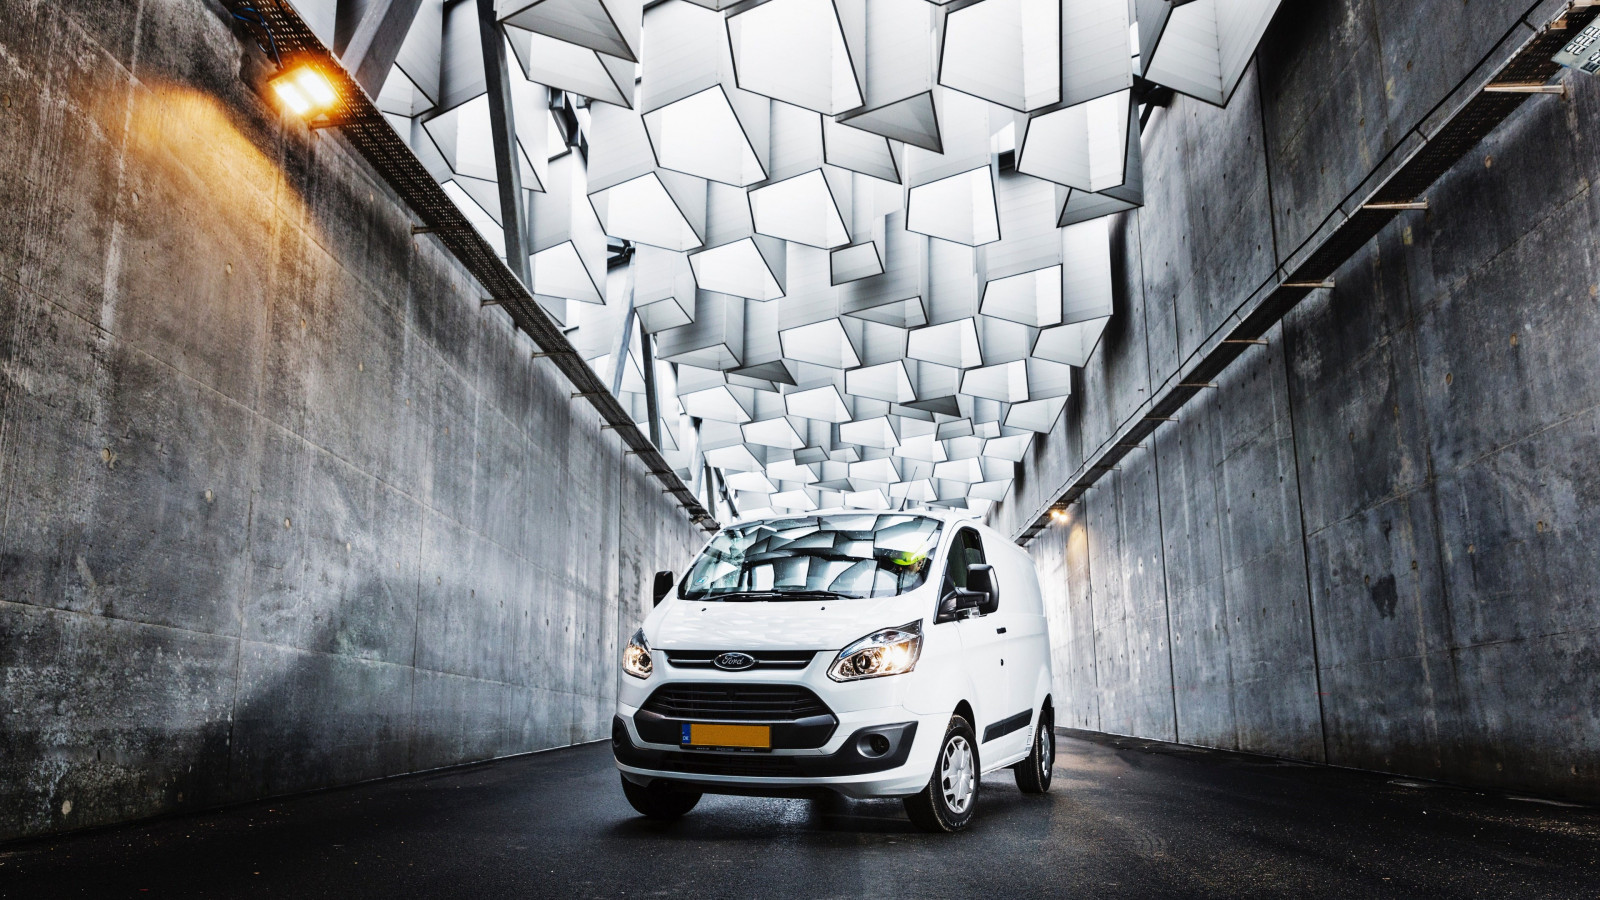 Ford van on the streets of Copenhagen wallpaper 1600x900